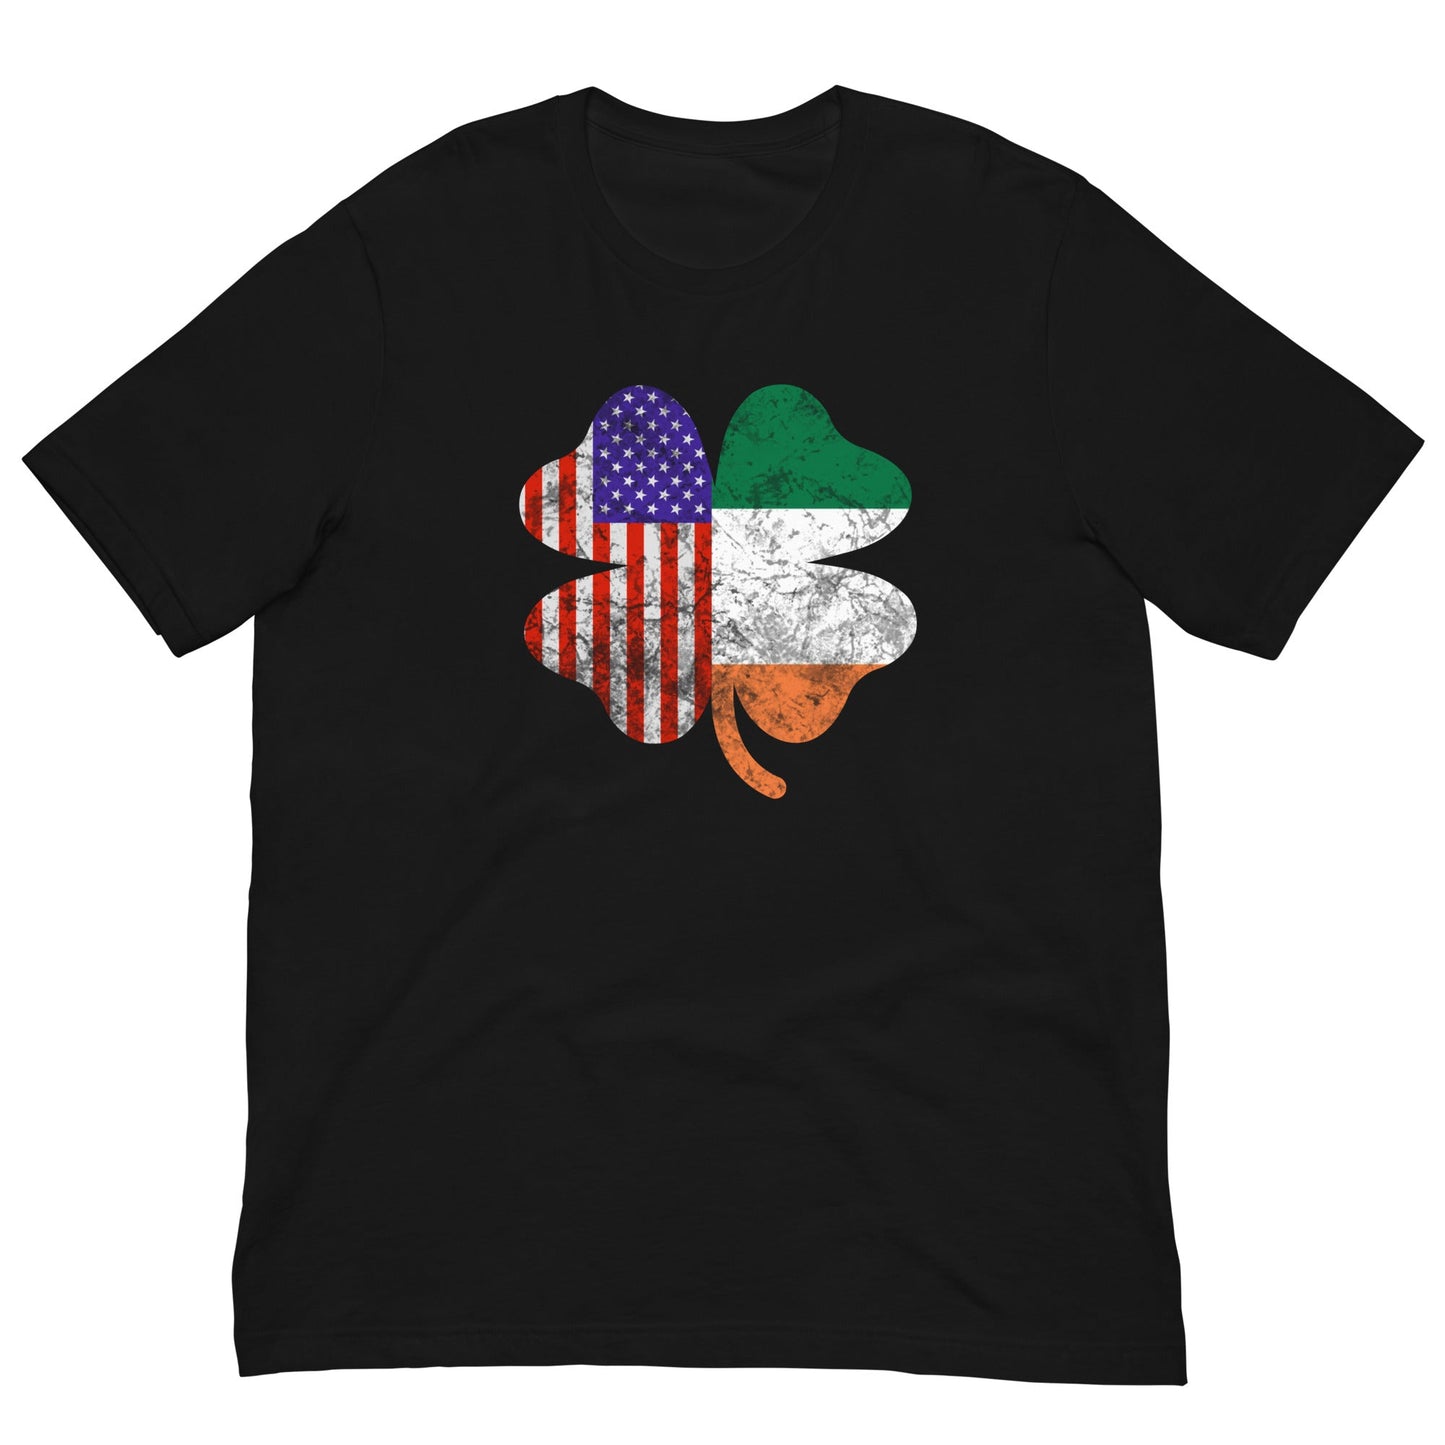 Irish American Flag T-shirt Black / XS